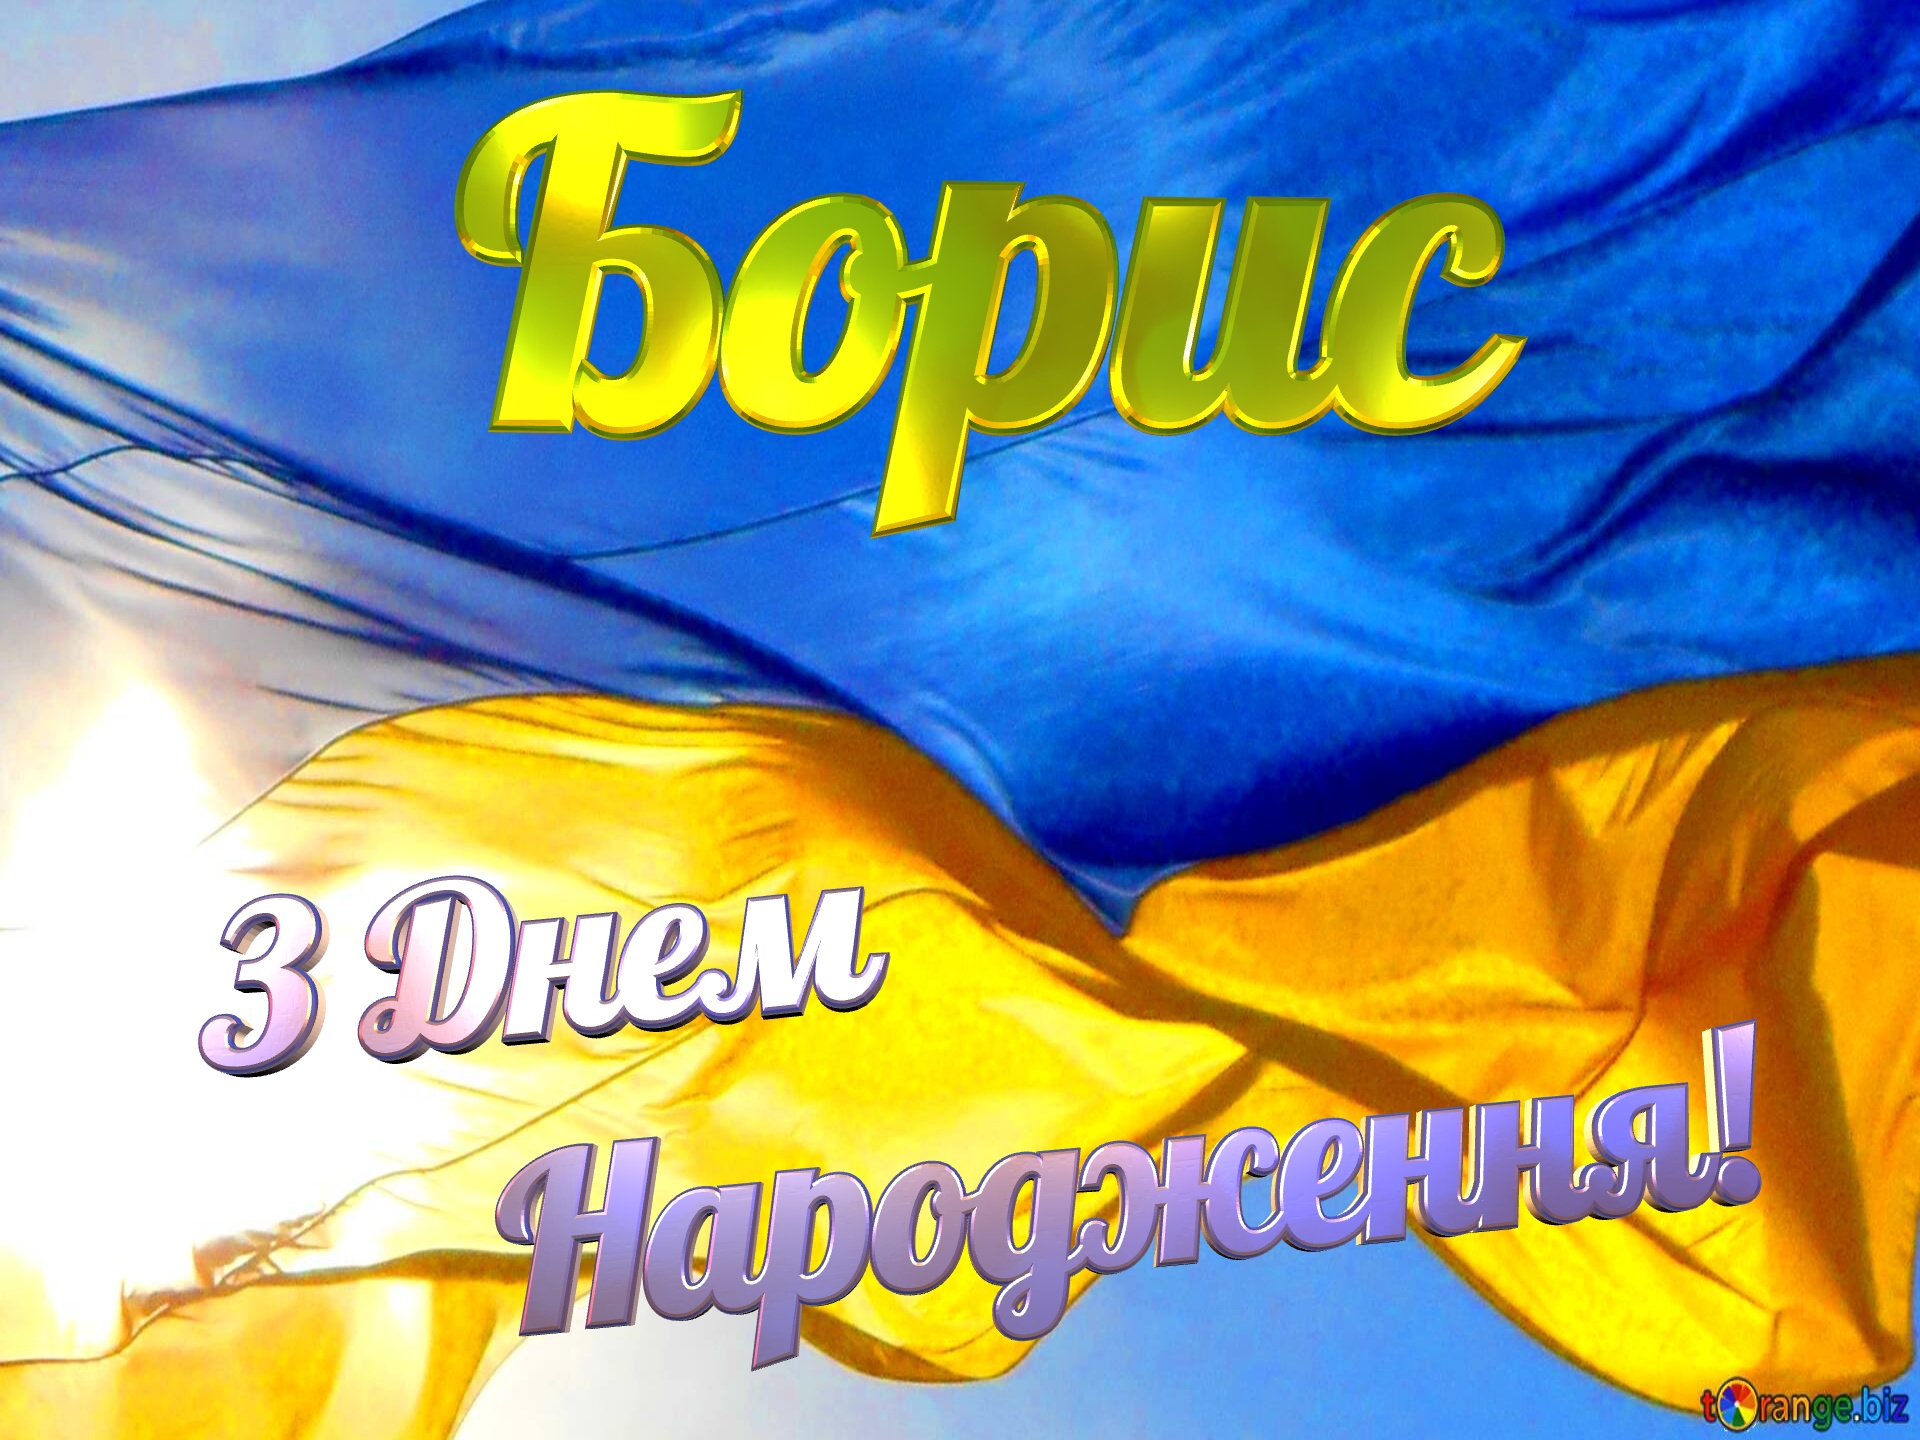 Борис З Днем  Народження! Flag Ukraine №0